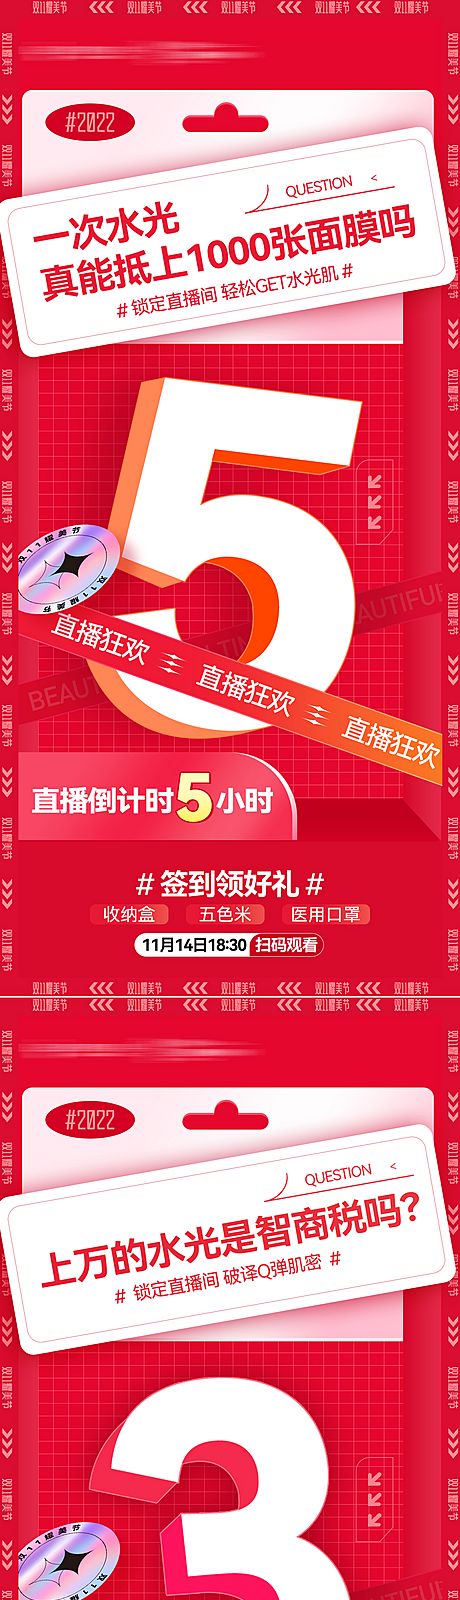 仙图网-医美周年庆双11直播盛典倒计时海报